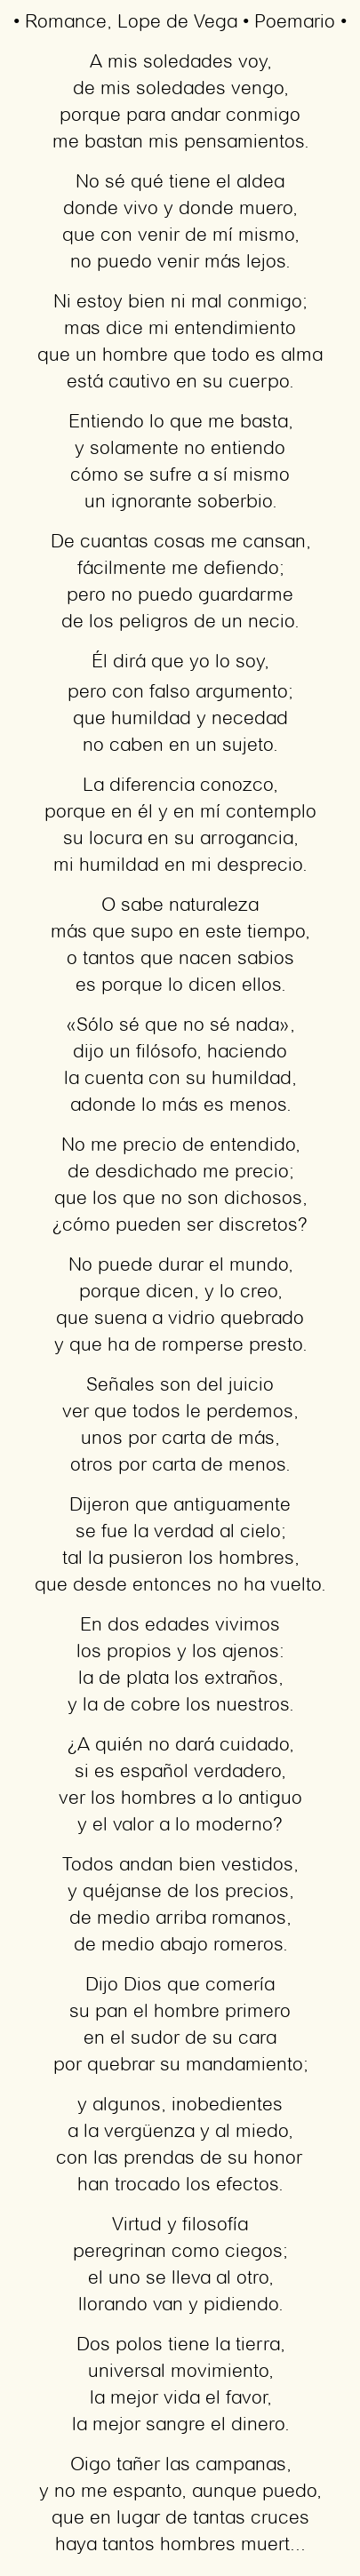 Imagen con el poema Romance, por Lope de Vega